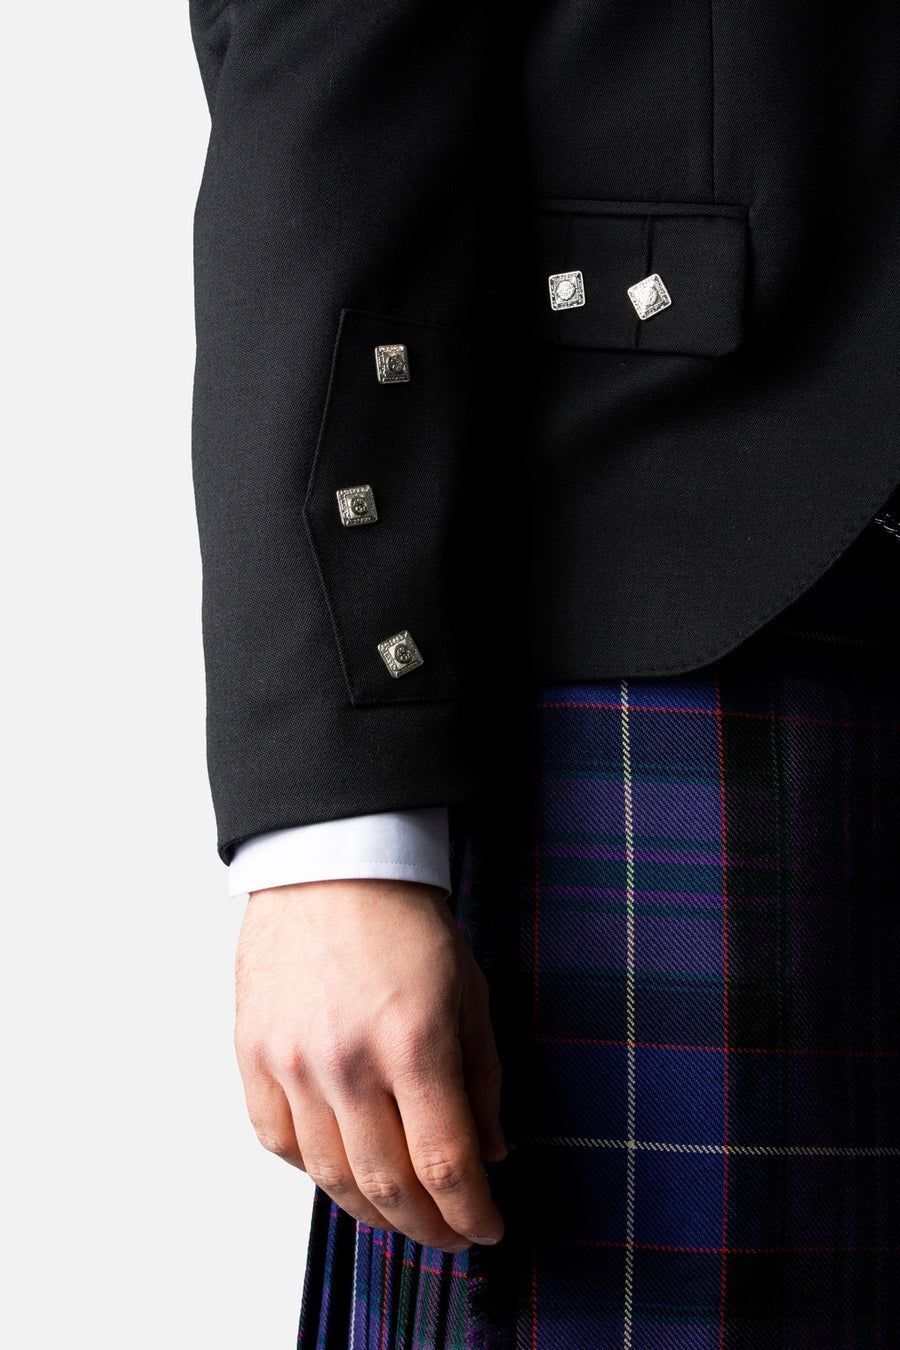 Black Argyll Jacket & Vest Waistcoat 100% Wool Kilt Jacket